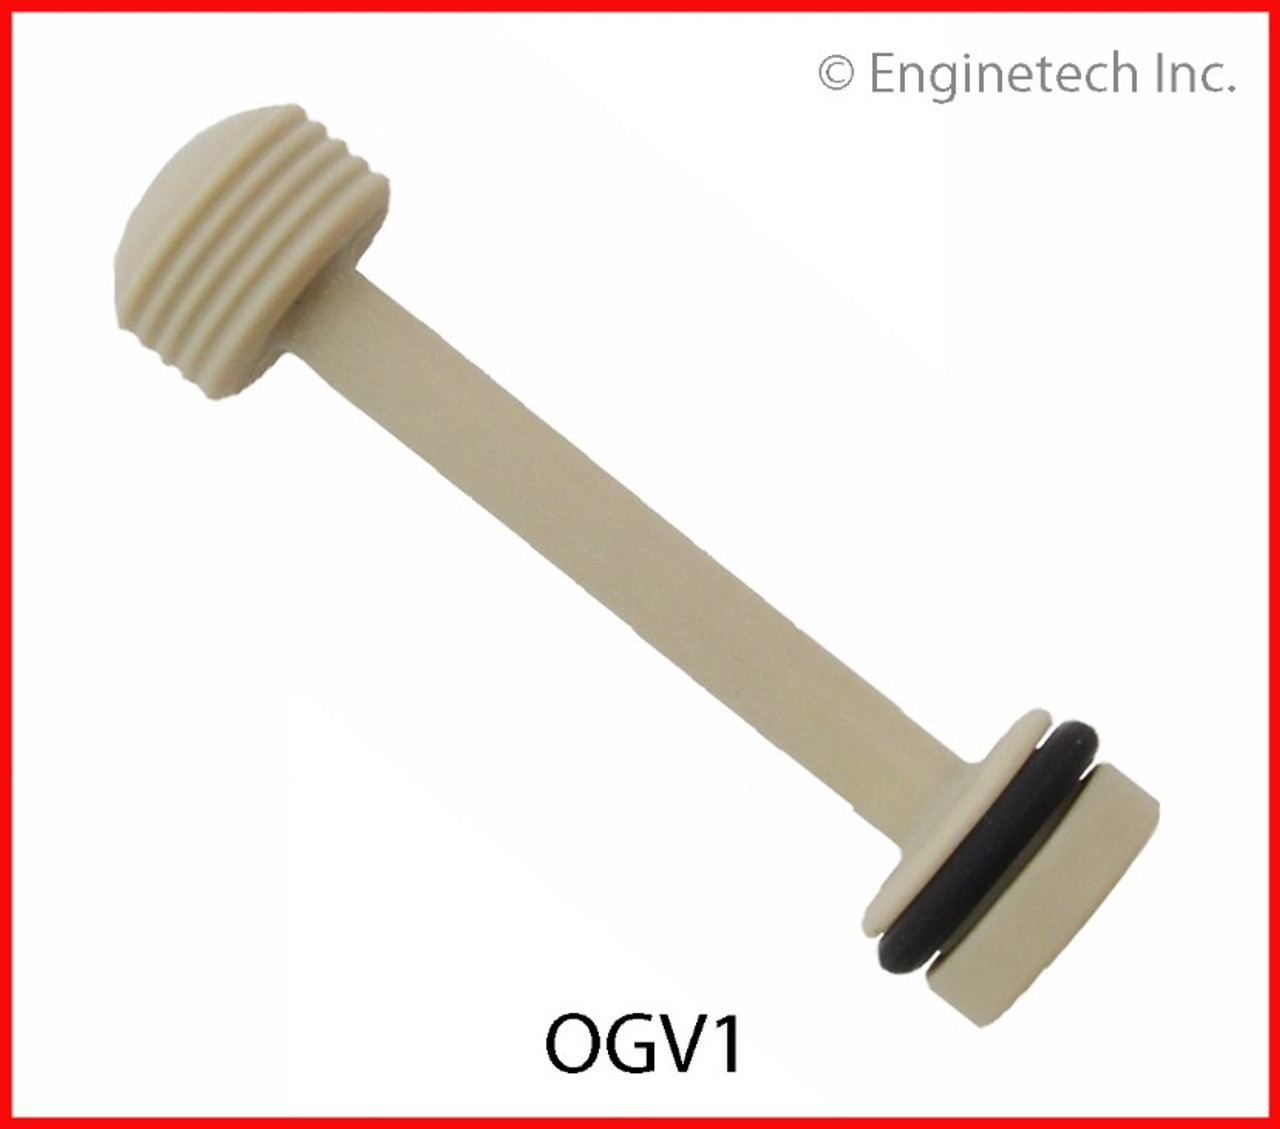 Oil Galley Plug - 2014 Chevrolet Silverado 1500 5.3L (OGV1.K888)